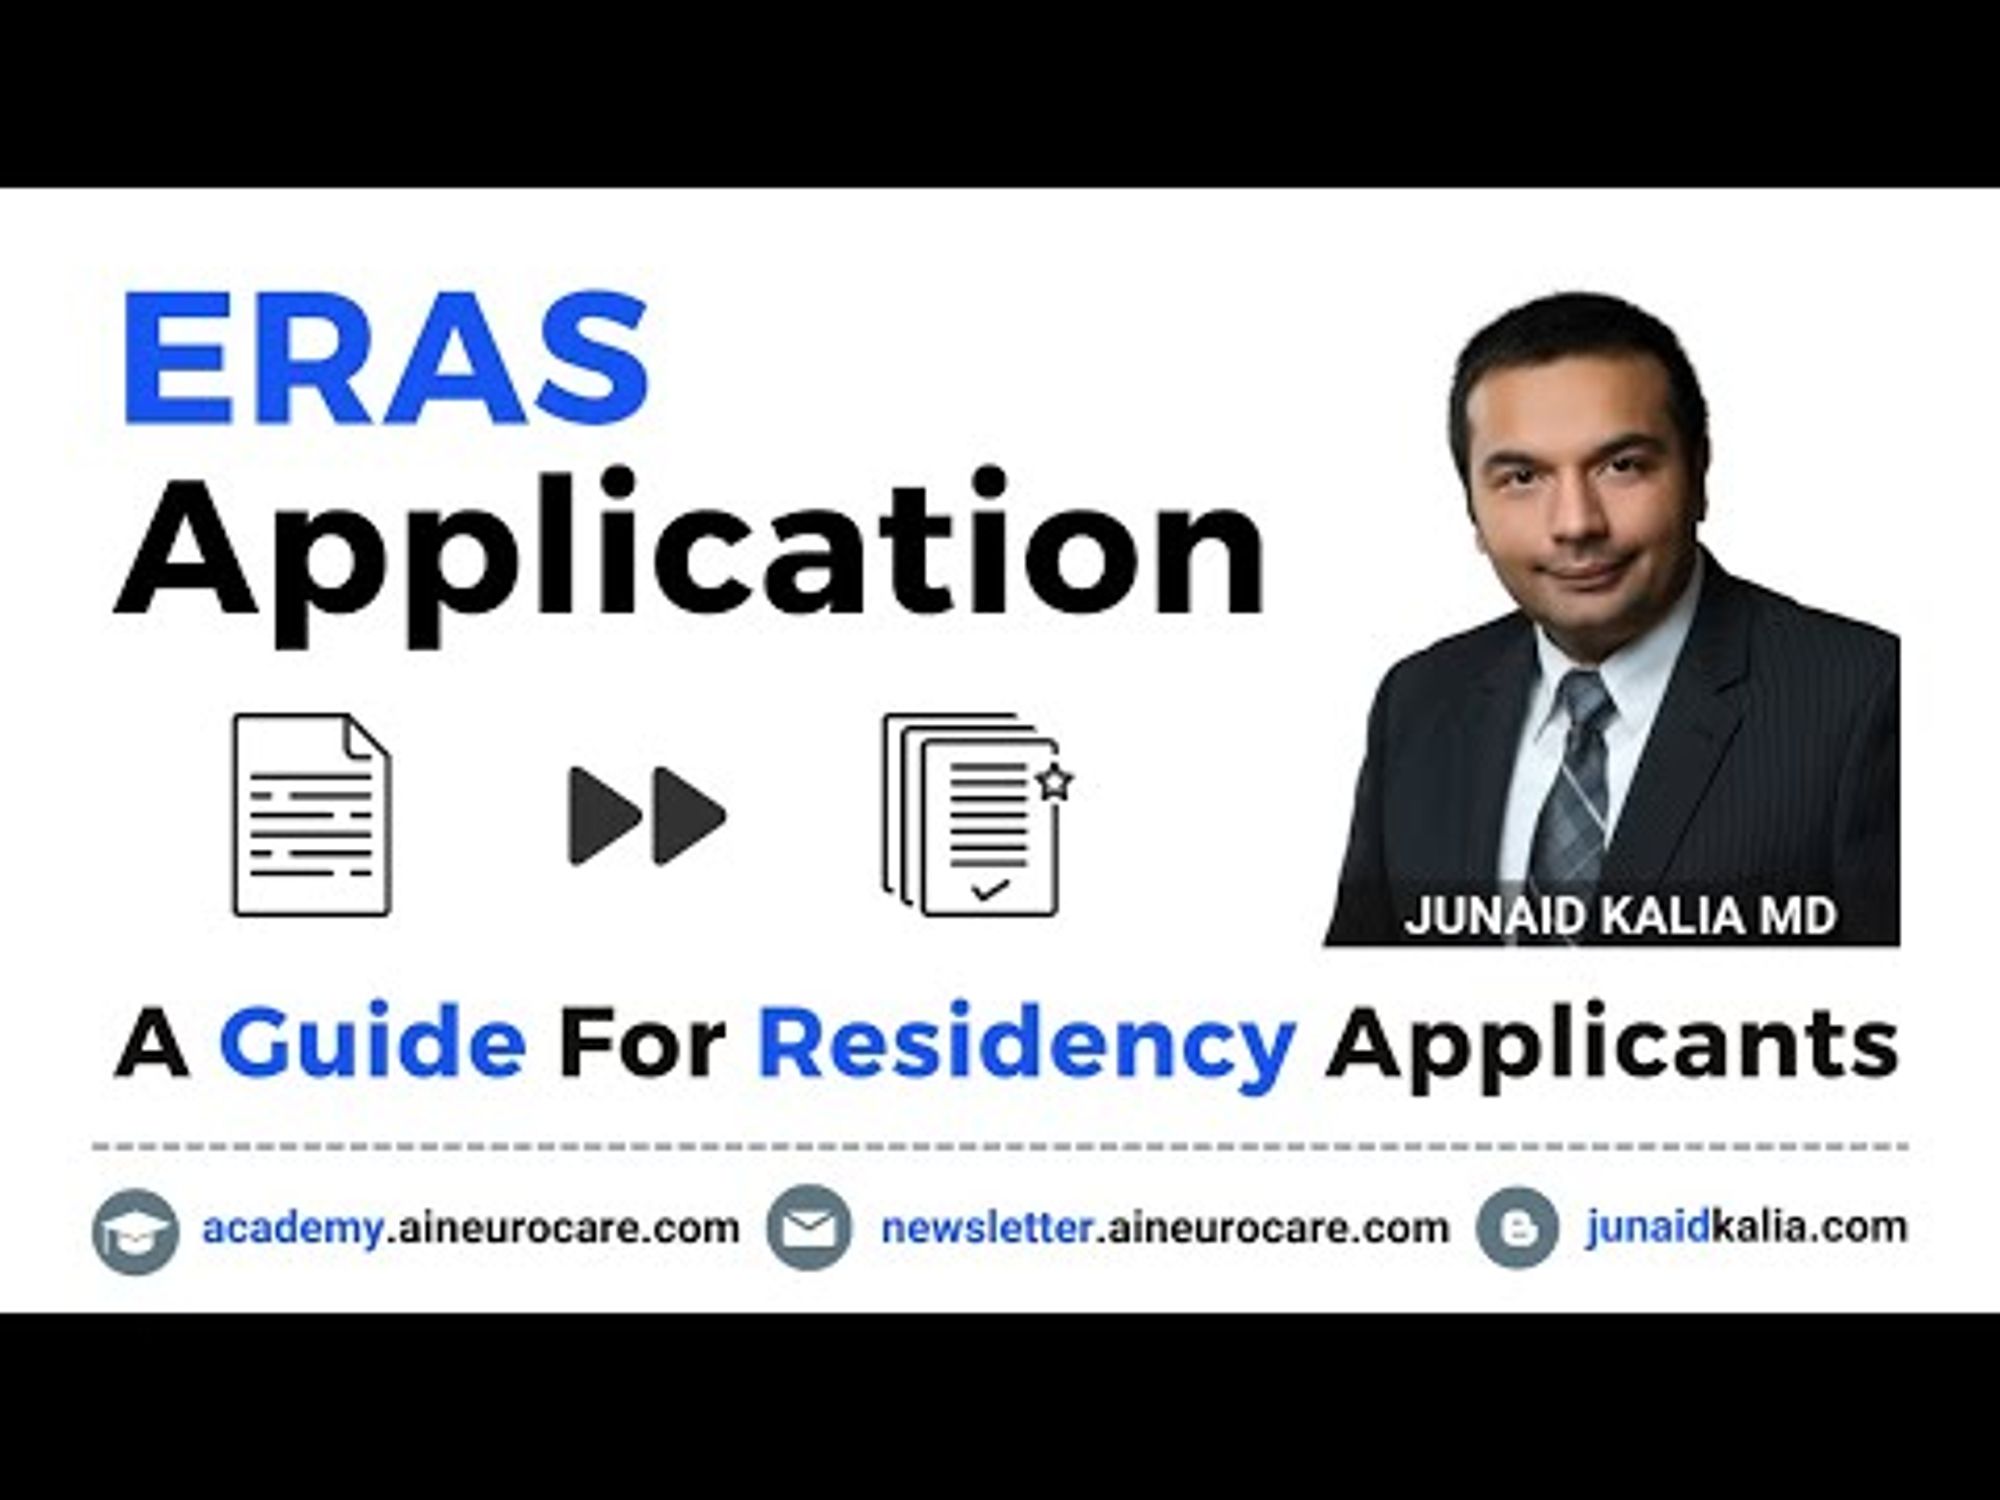 ERAS Application - A Brief Guide